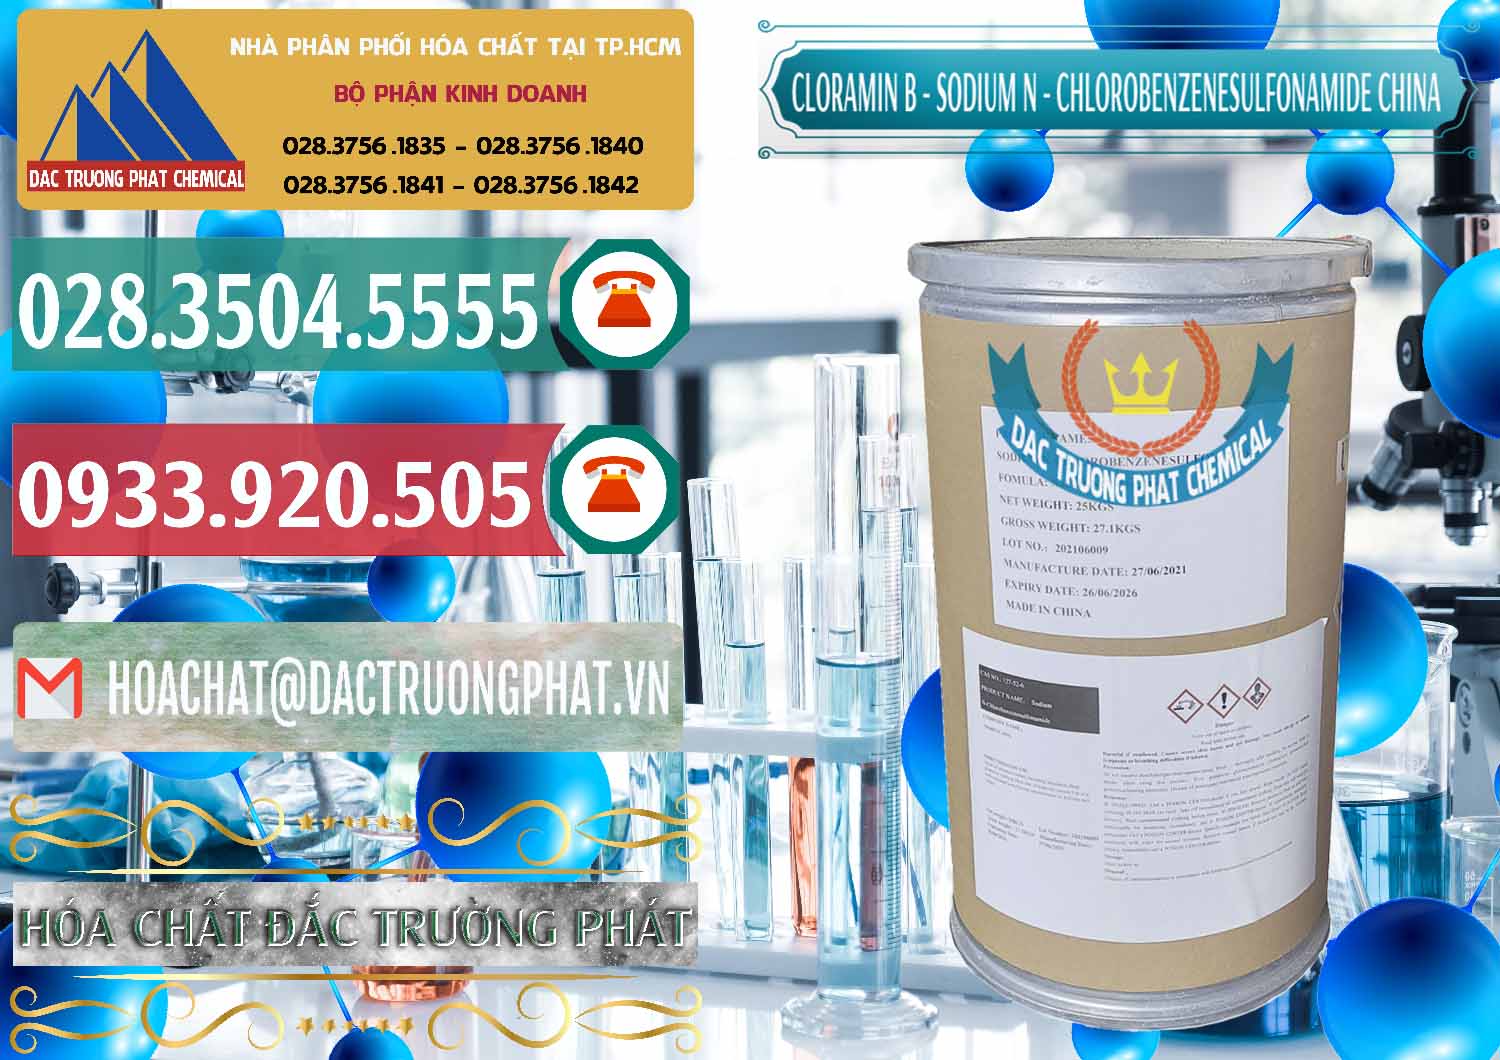 Công ty chuyên bán _ phân phối Cloramin B Khử Trùng, Diệt Khuẩn Trung Quốc China - 0298 - Cty kinh doanh & phân phối hóa chất tại TP.HCM - muabanhoachat.vn